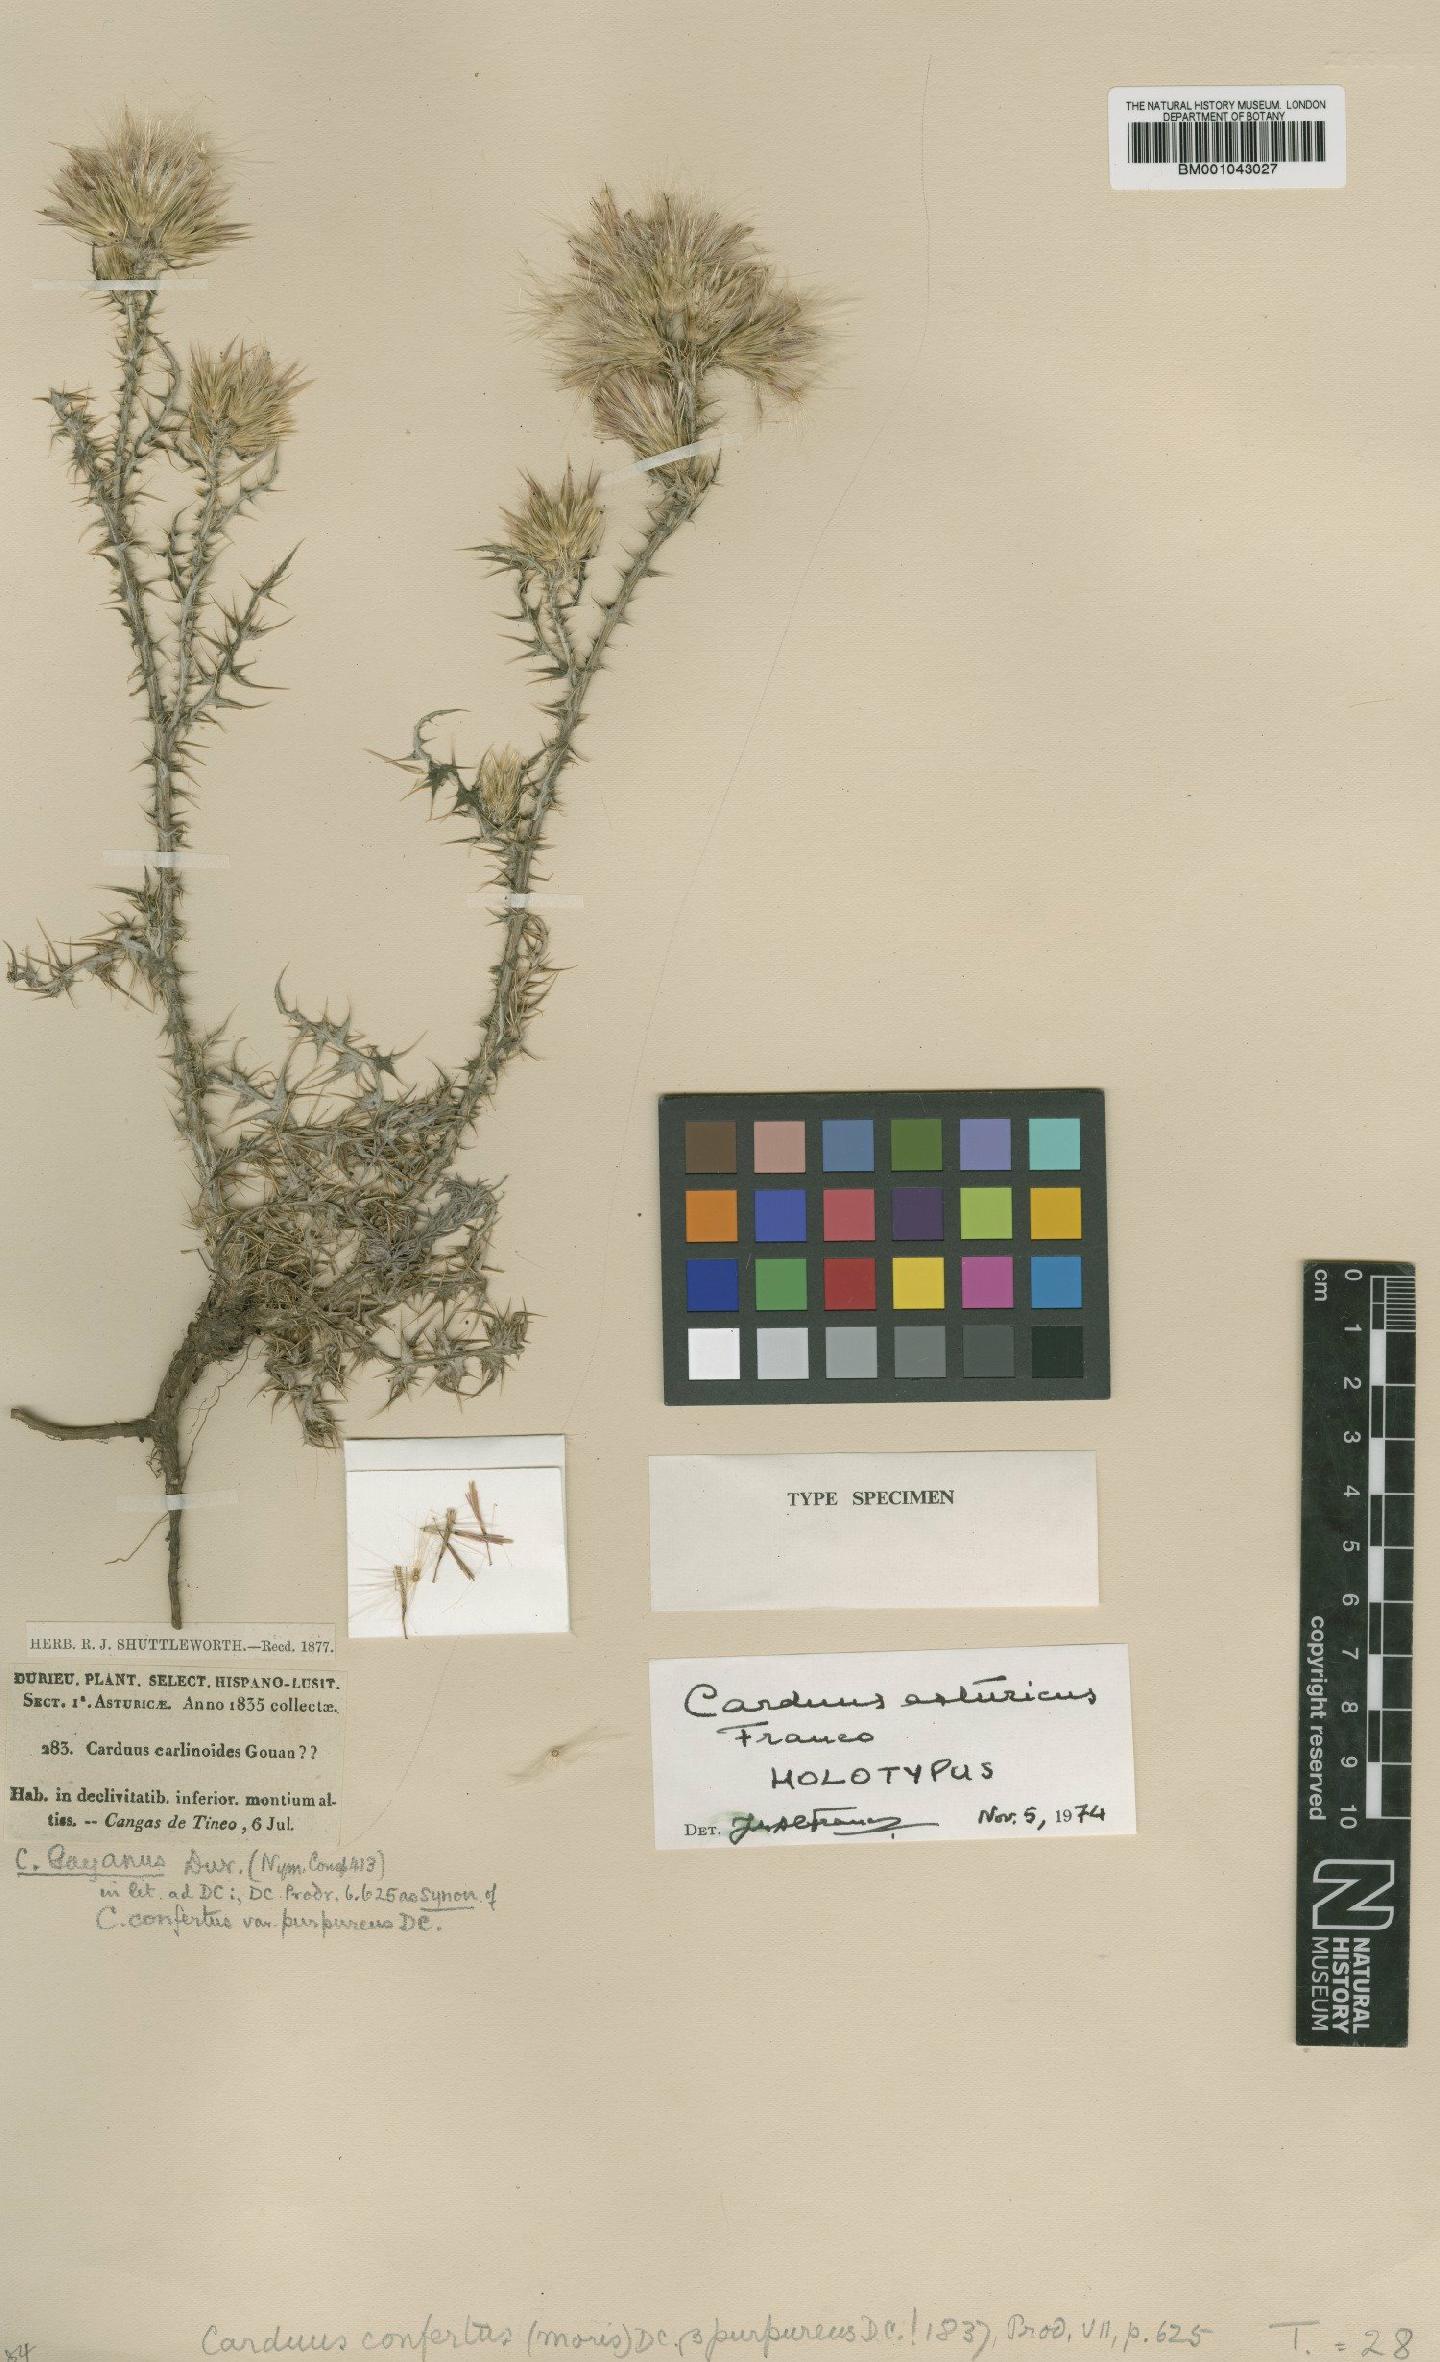 To NHMUK collection (Carduus asturicus Franco; Holotype; NHMUK:ecatalogue:1958123)